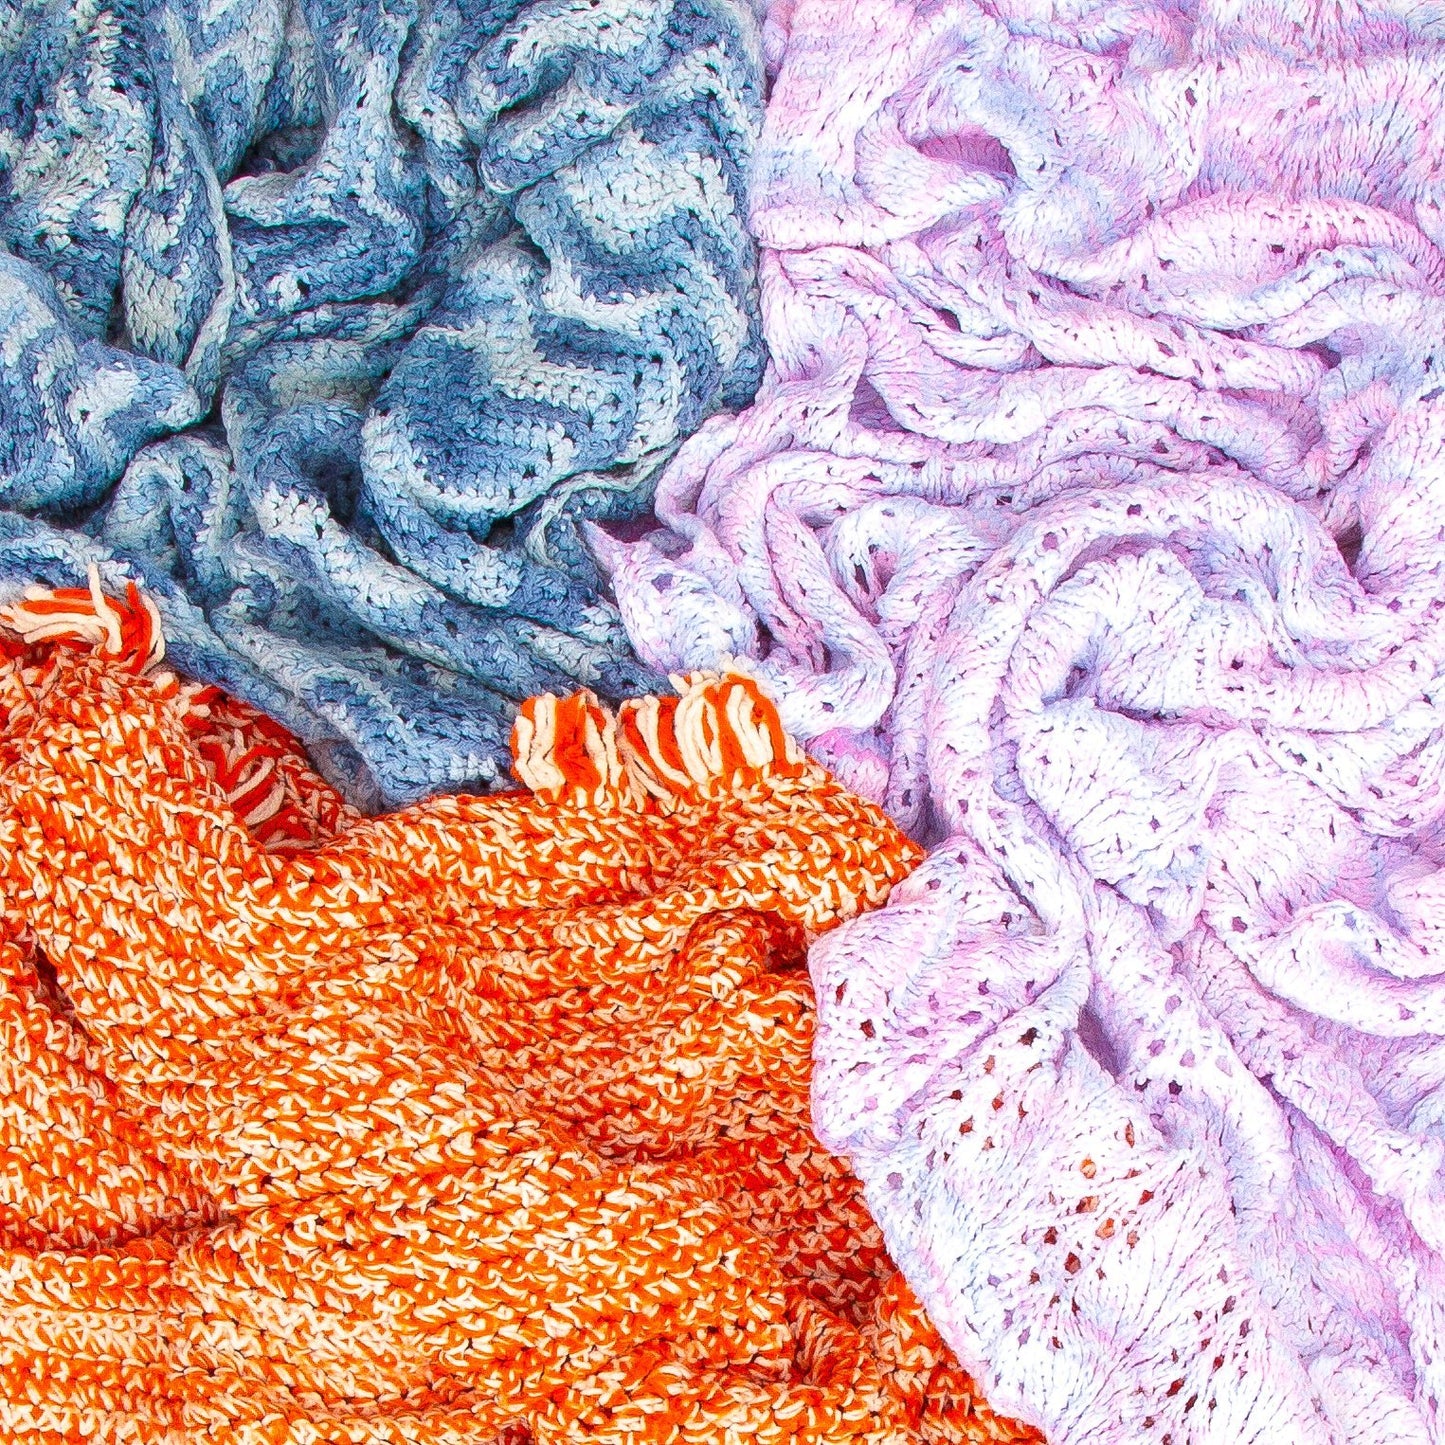 Preloved Crochet Throw Blanket Home Goods Goodfair 